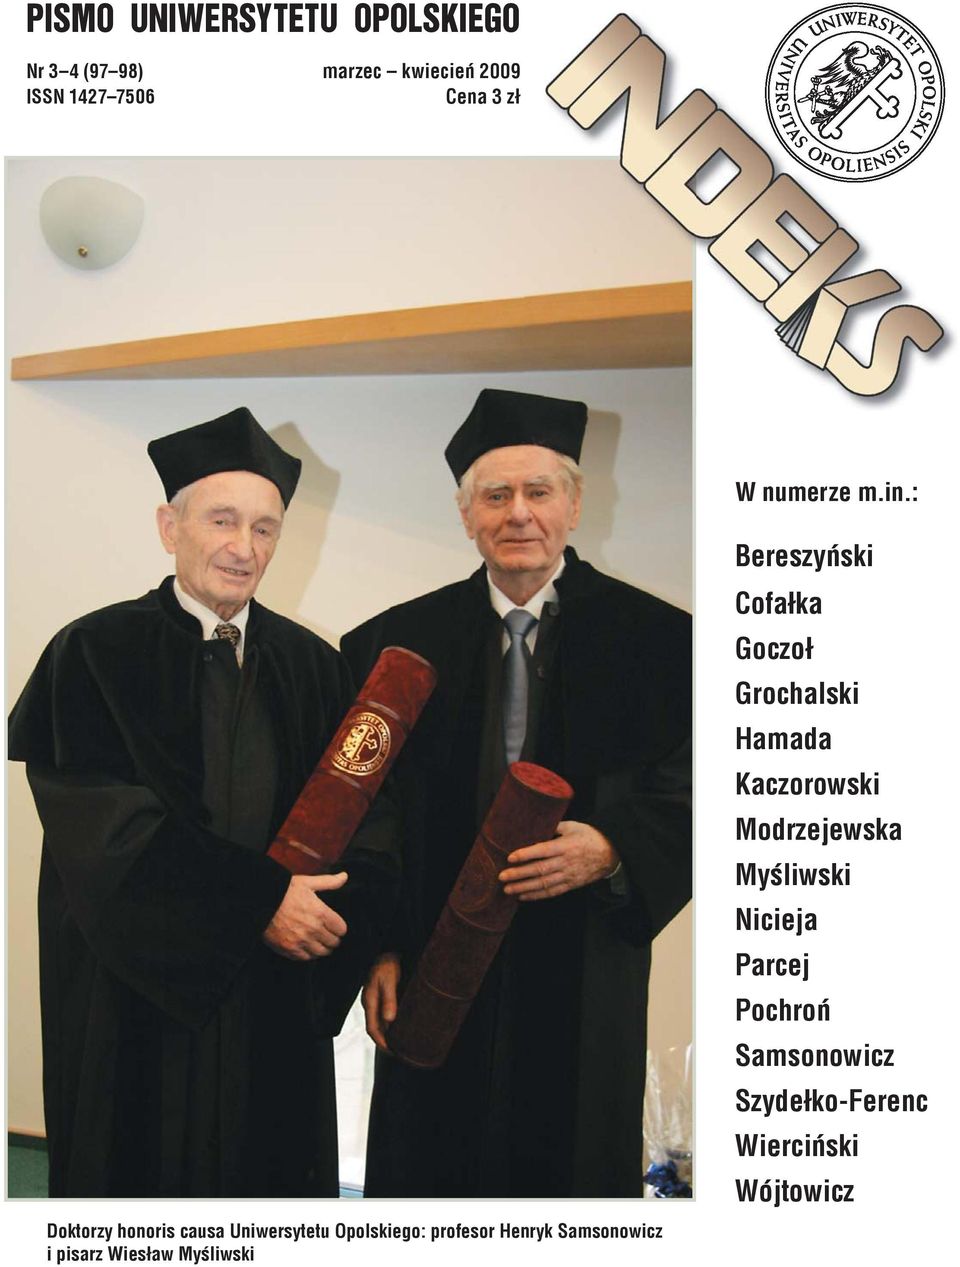 : Doktorzy honoris causa Uniwersytetu Opolskiego: profesor Henryk Samsonowicz i pisarz